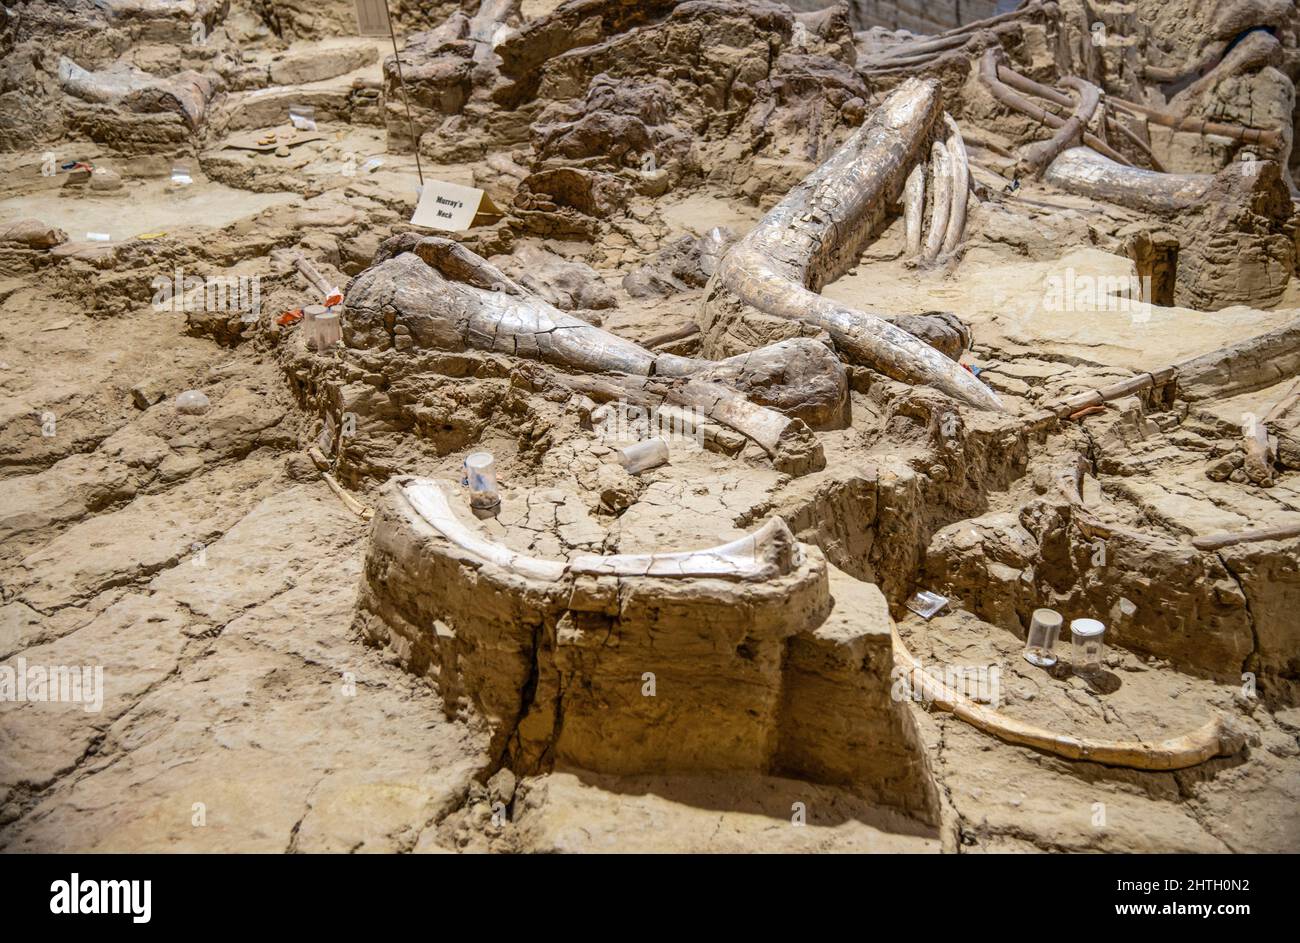 Aktive Ausgrabungsstätte eines aus dem Pleistozän stammenden Sinklochs mit fossilen Mammutknochen in Hot Springs, South Dakota Stockfoto